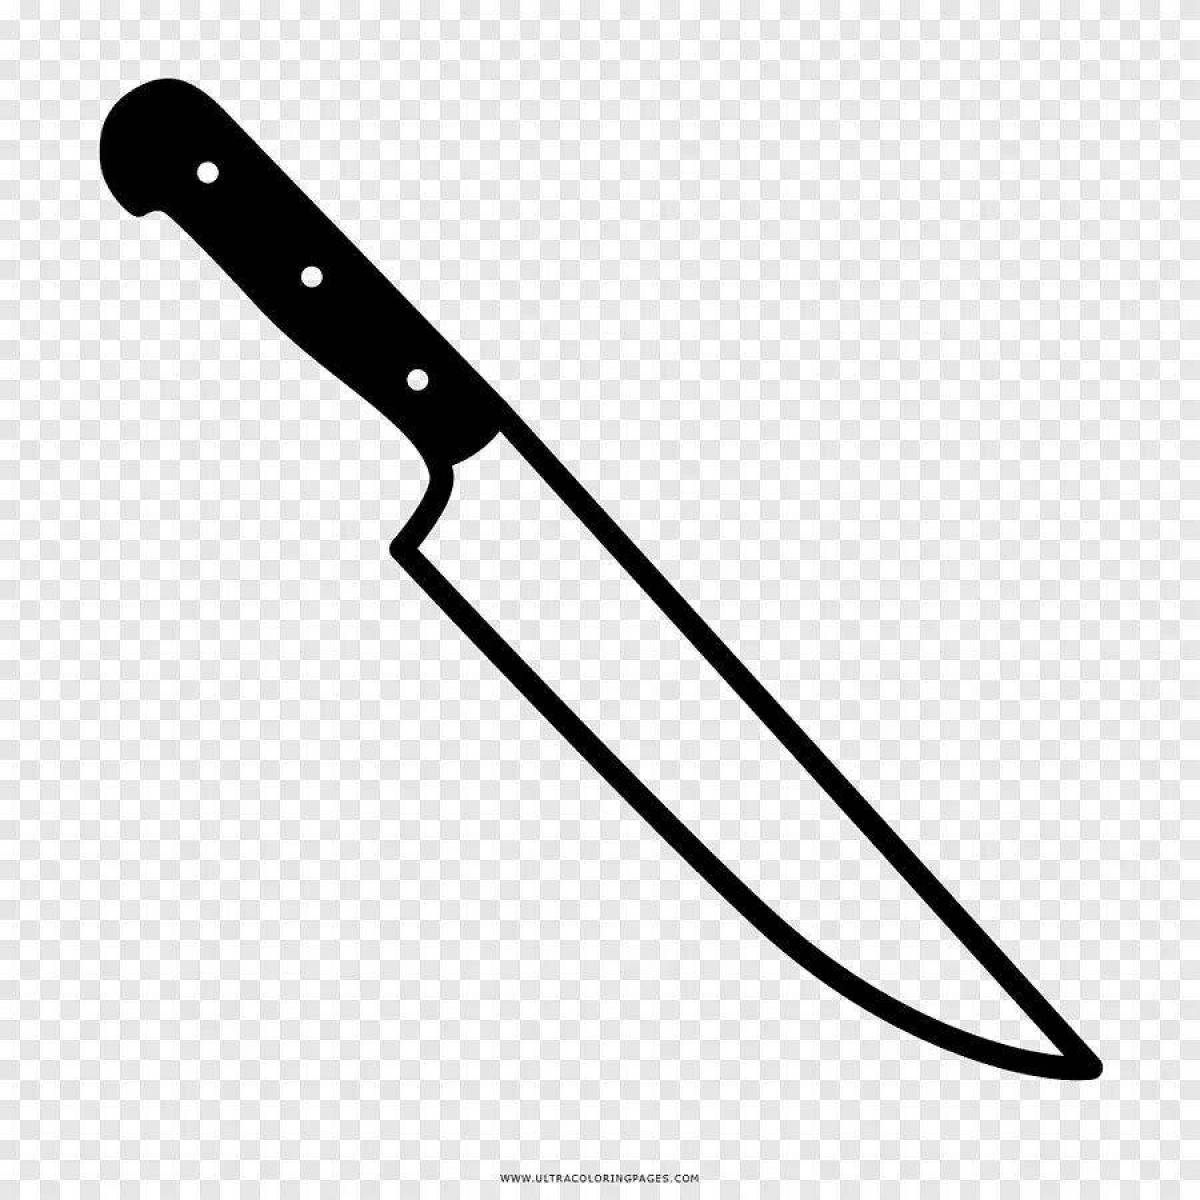 Knife #4